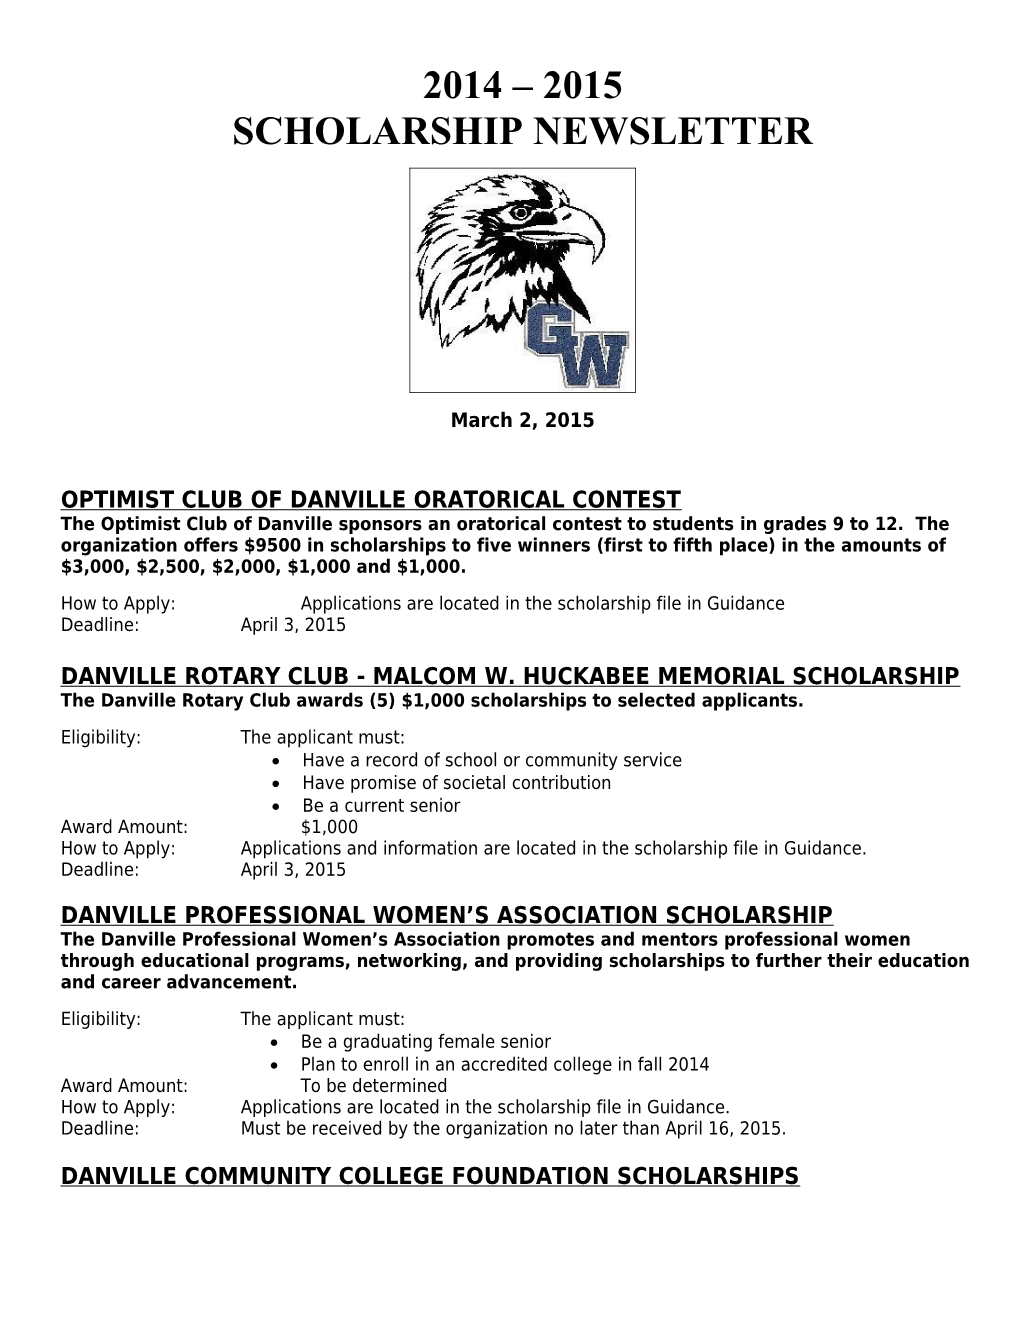 Optimist Club of Danville Oratorical Contest